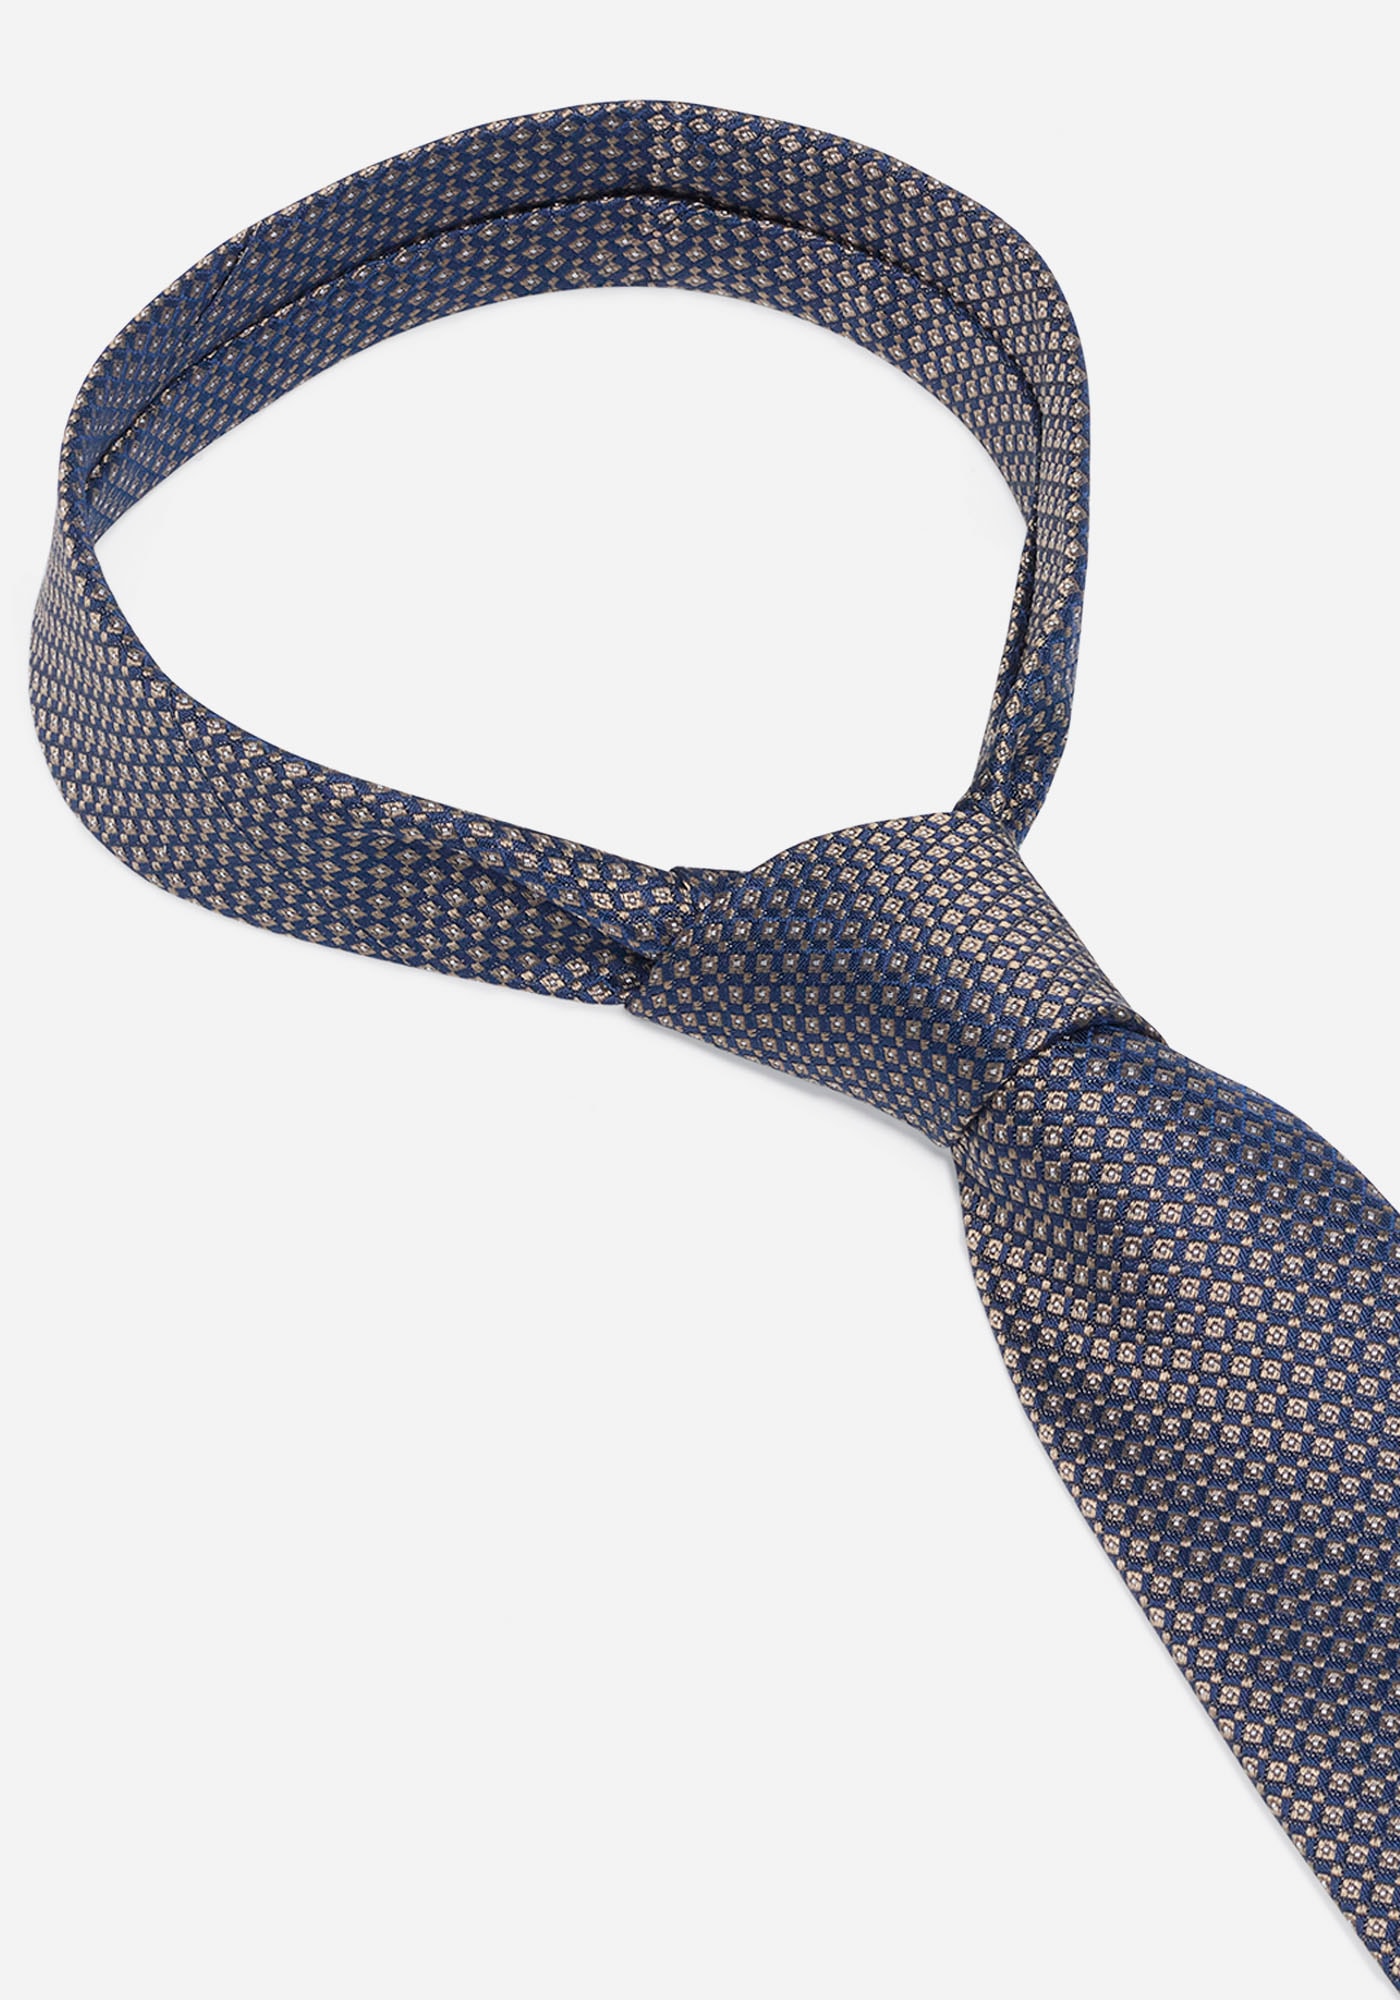 MONTI Krawatte »LIANO«, mit Wolleinlage für angenehmes Tragegefühl und Formstabilität